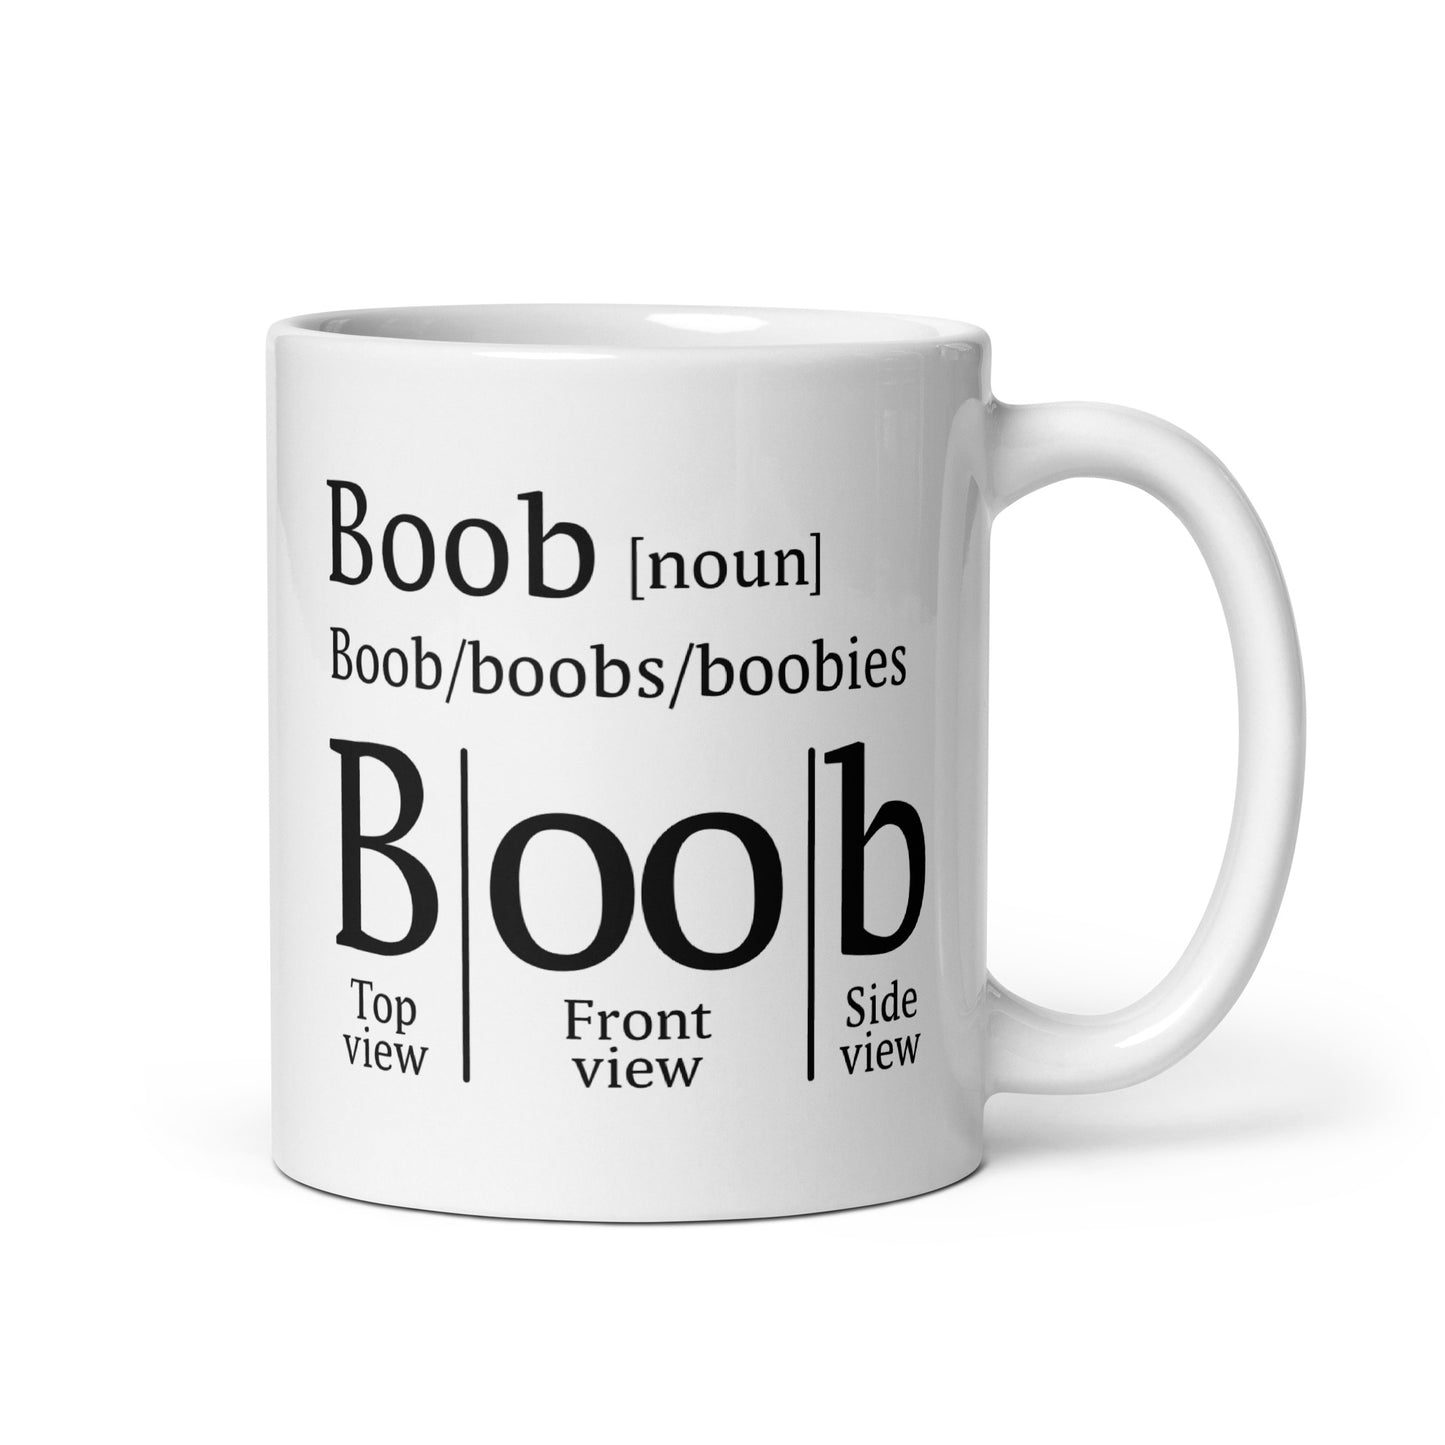 boob definition